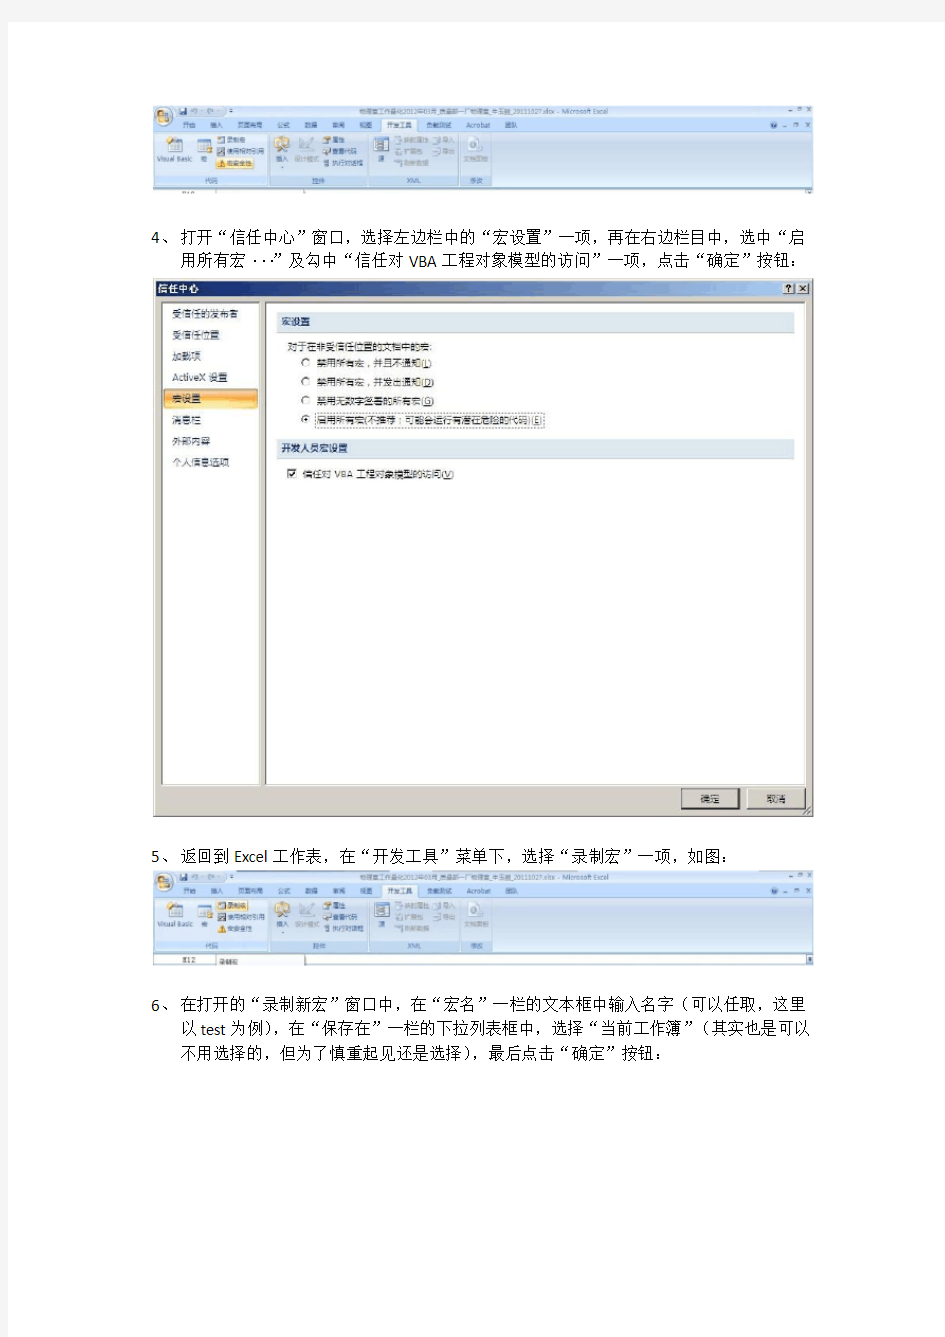 Office 2007 Excel工作表保护密码忘记之解决办法